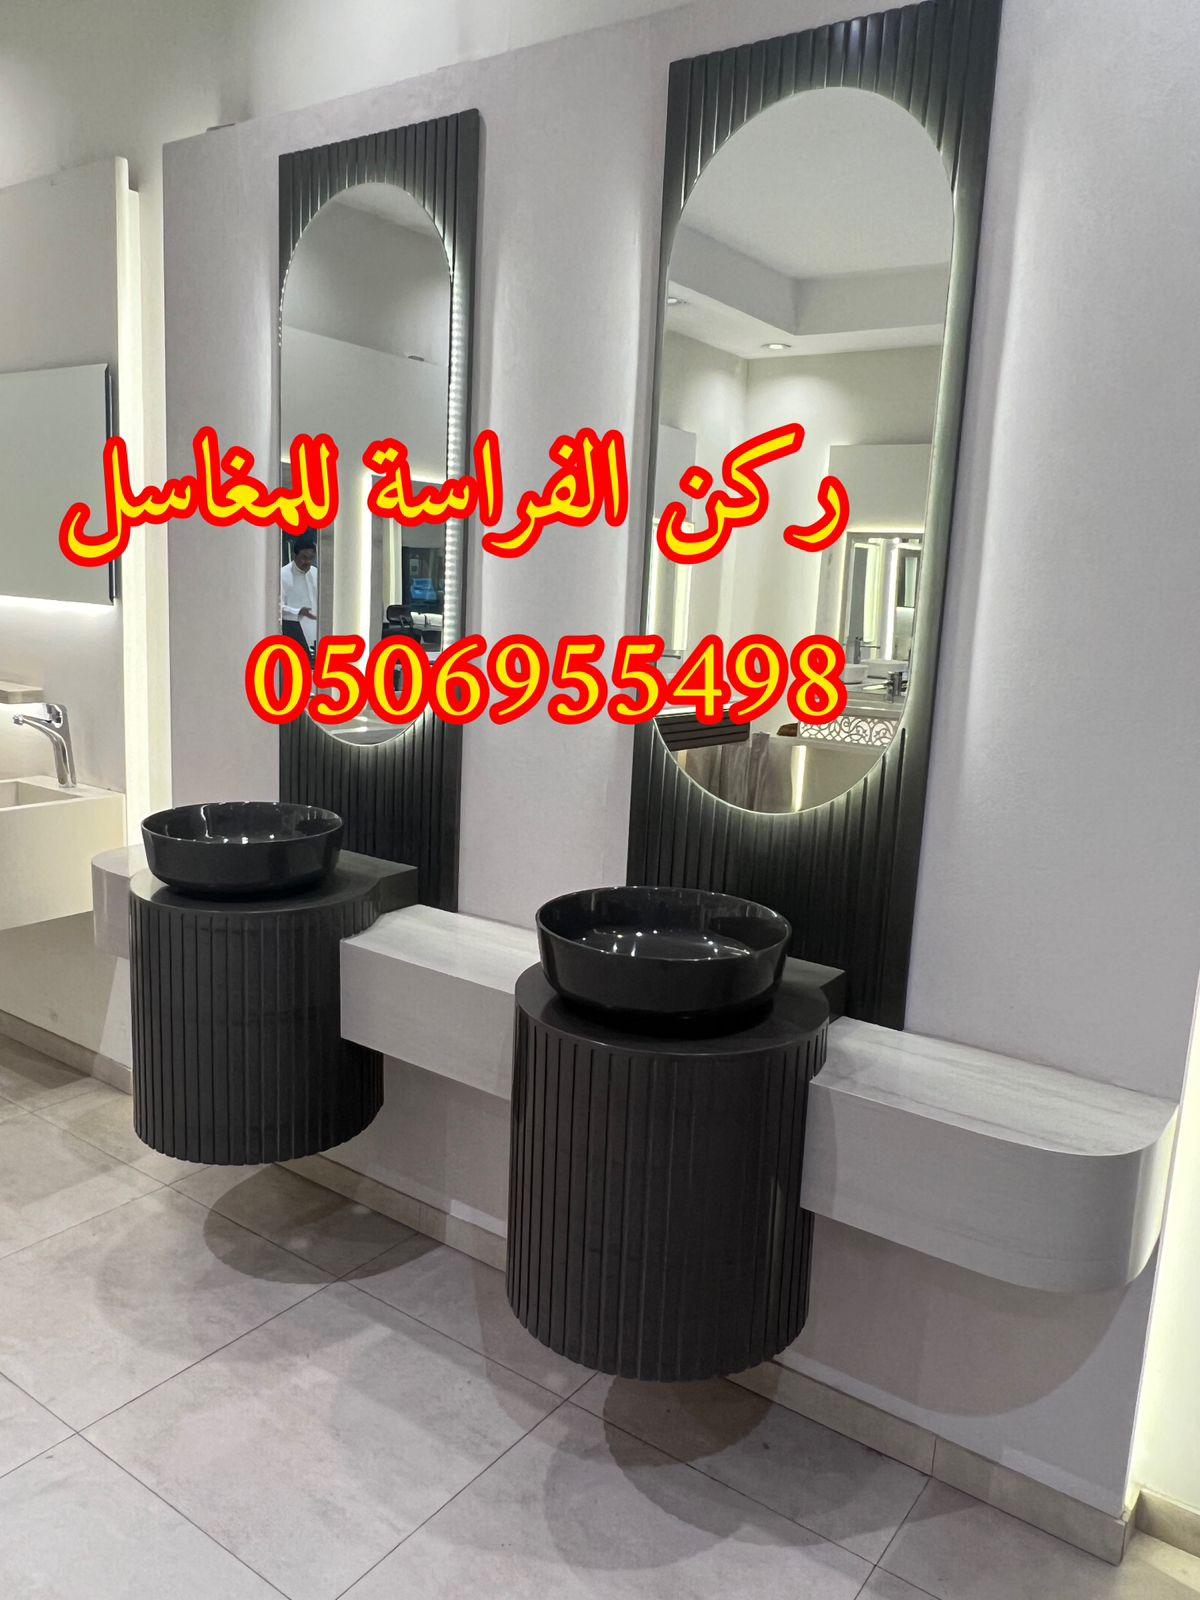 الرياض - تصاميم مغاسل رخام للمجالس في الرياض,0506955498 495869330